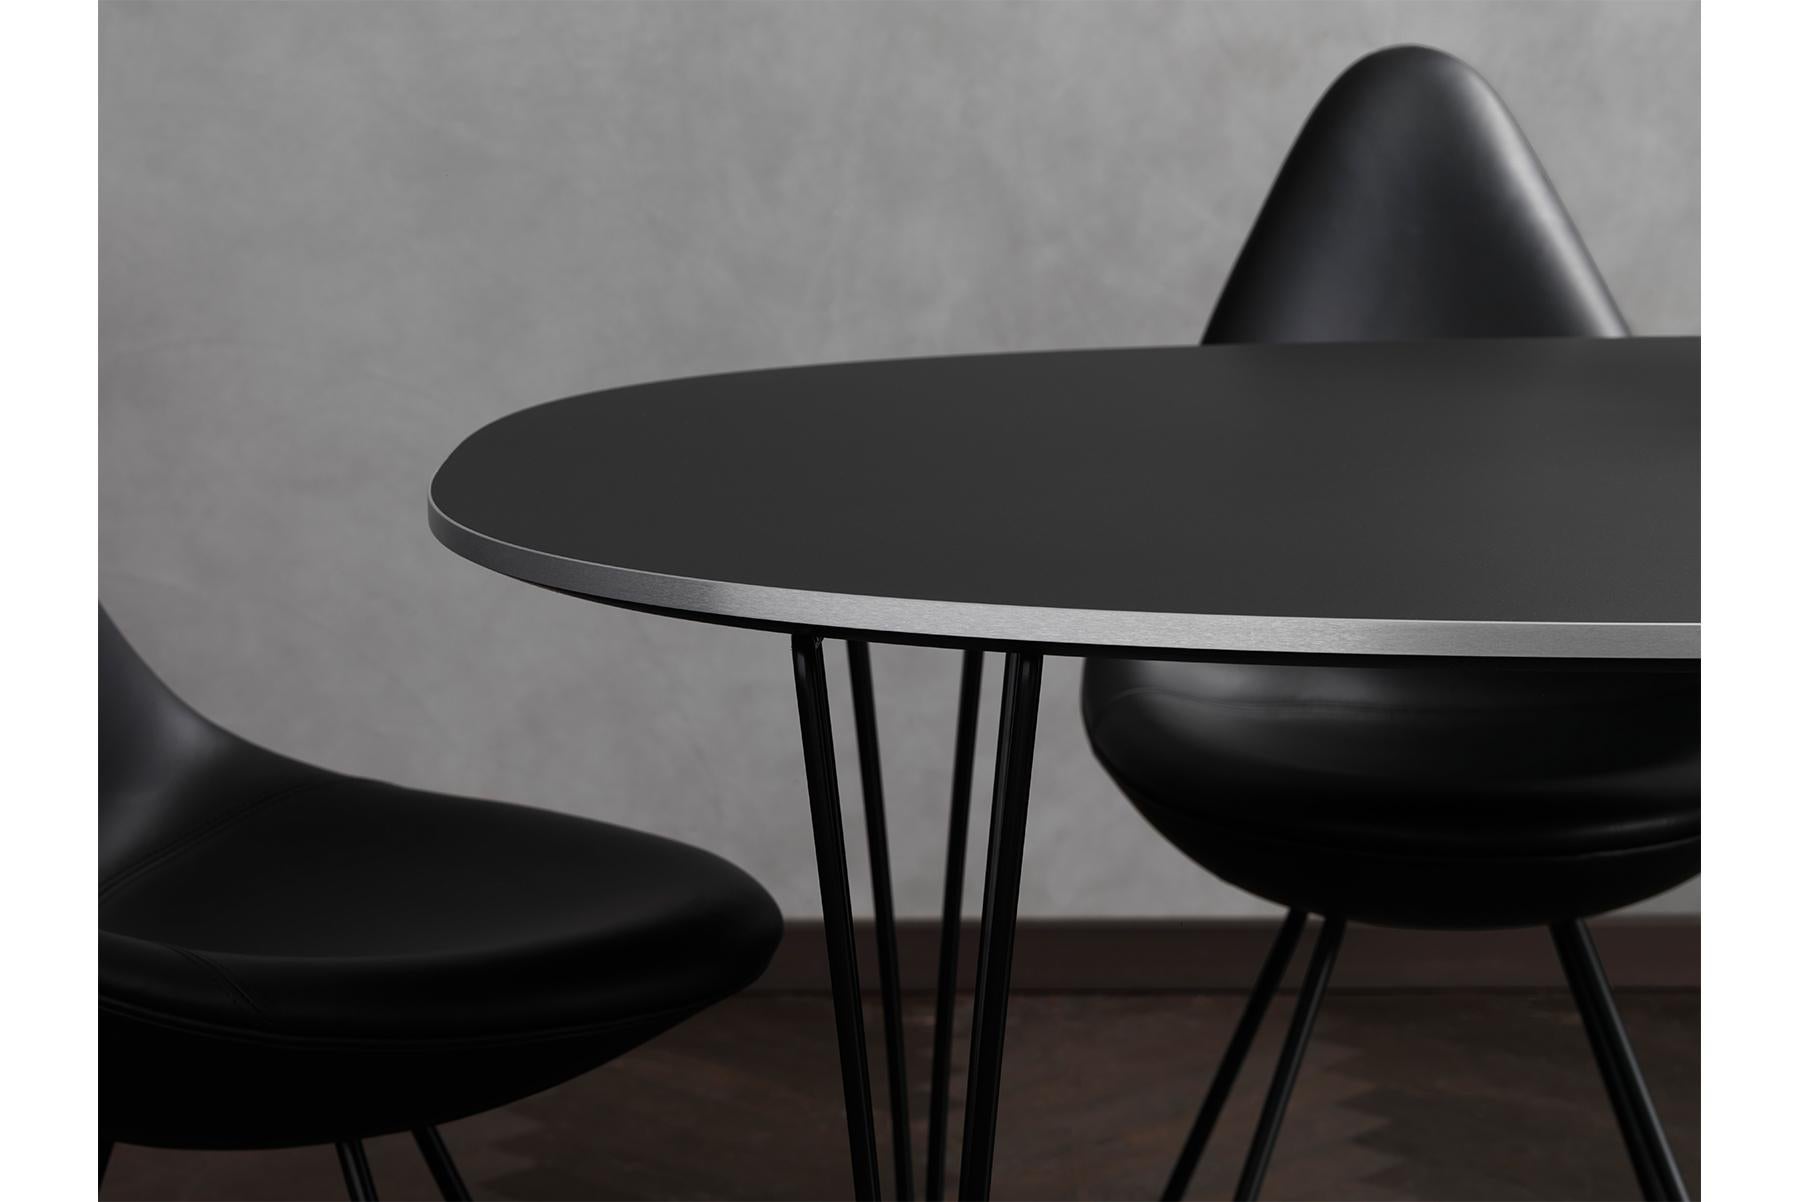 Nach der Einführung von zwei neuen Kunststofffarben Anfang 2016, Burgunderrot und Schattengrau, stellt Fritz Hansen nun eine neue Lederversion des Stuhls vor. Die neue Black Edition Drop kommt in schwarzem Basic-Leder mit schwarz pulverbeschichteten